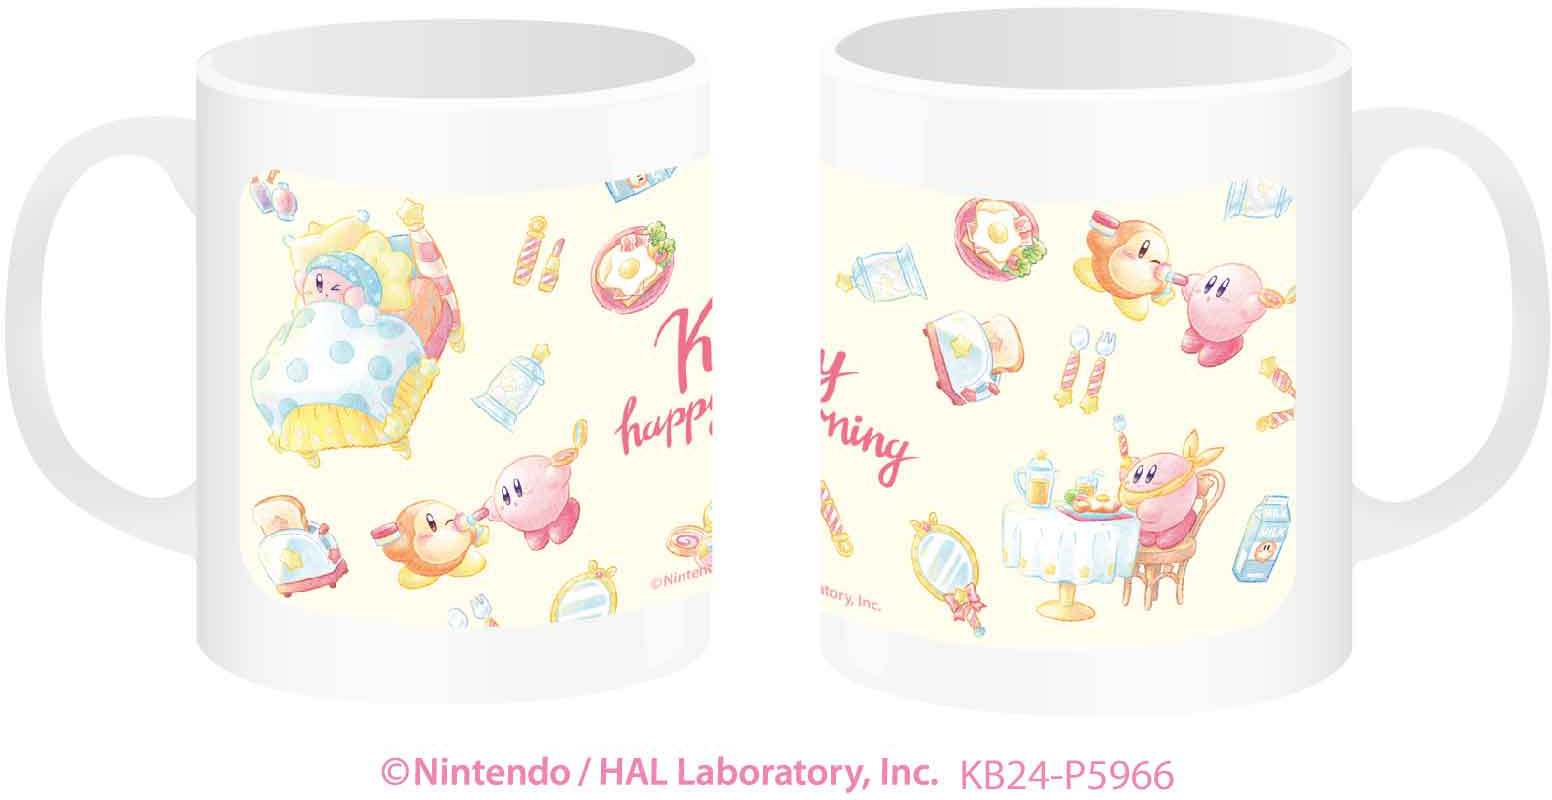 Kirby cups : r/Kirby